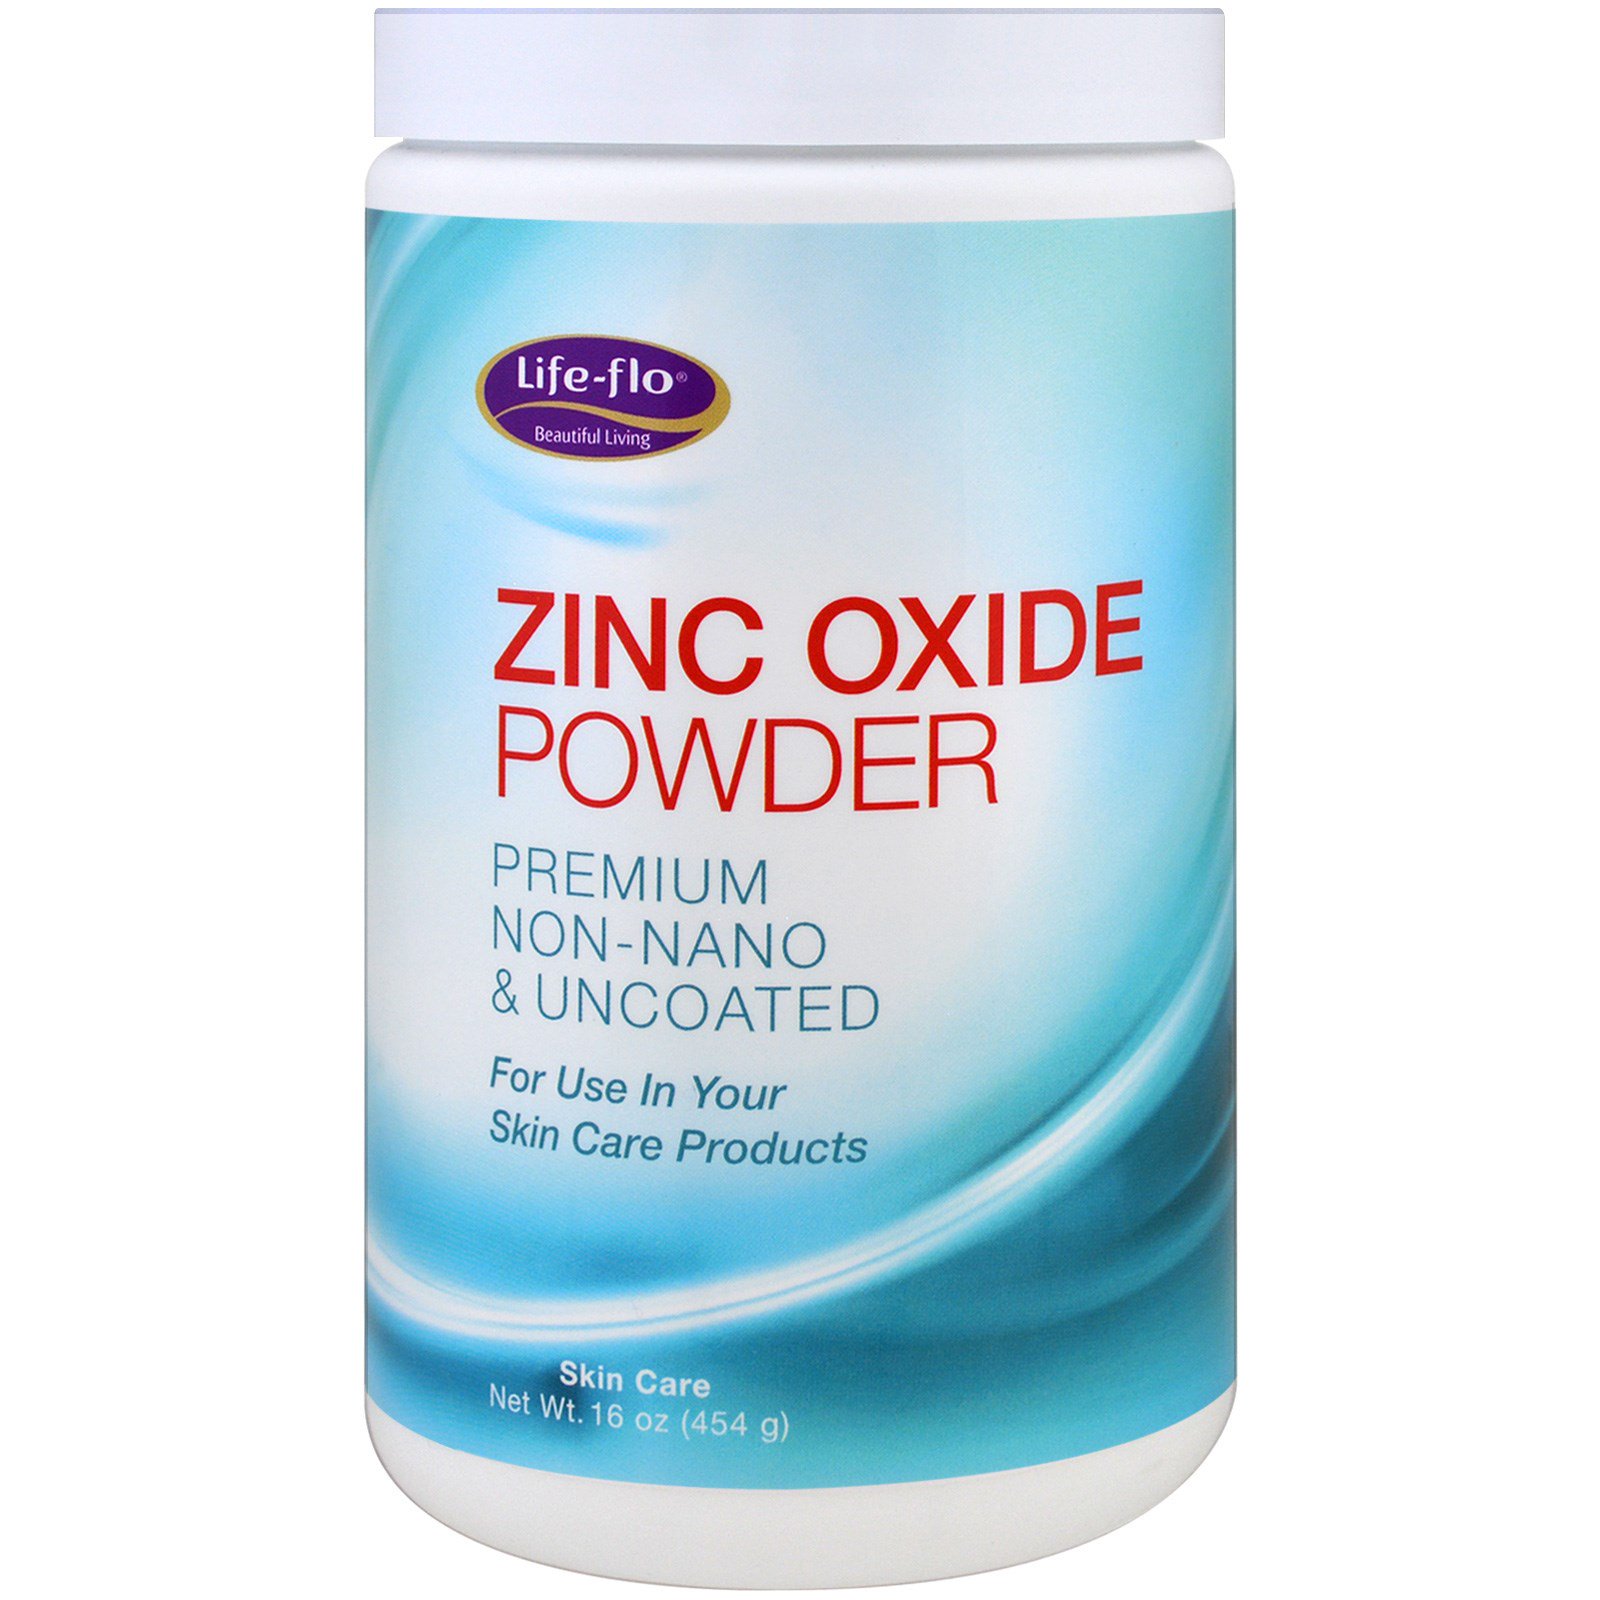 Оксид цинка проявляет. ZINC%20OXIDE%20 POWDER. Оксид цинка. Оксид цинка порошок. Flo порошок.